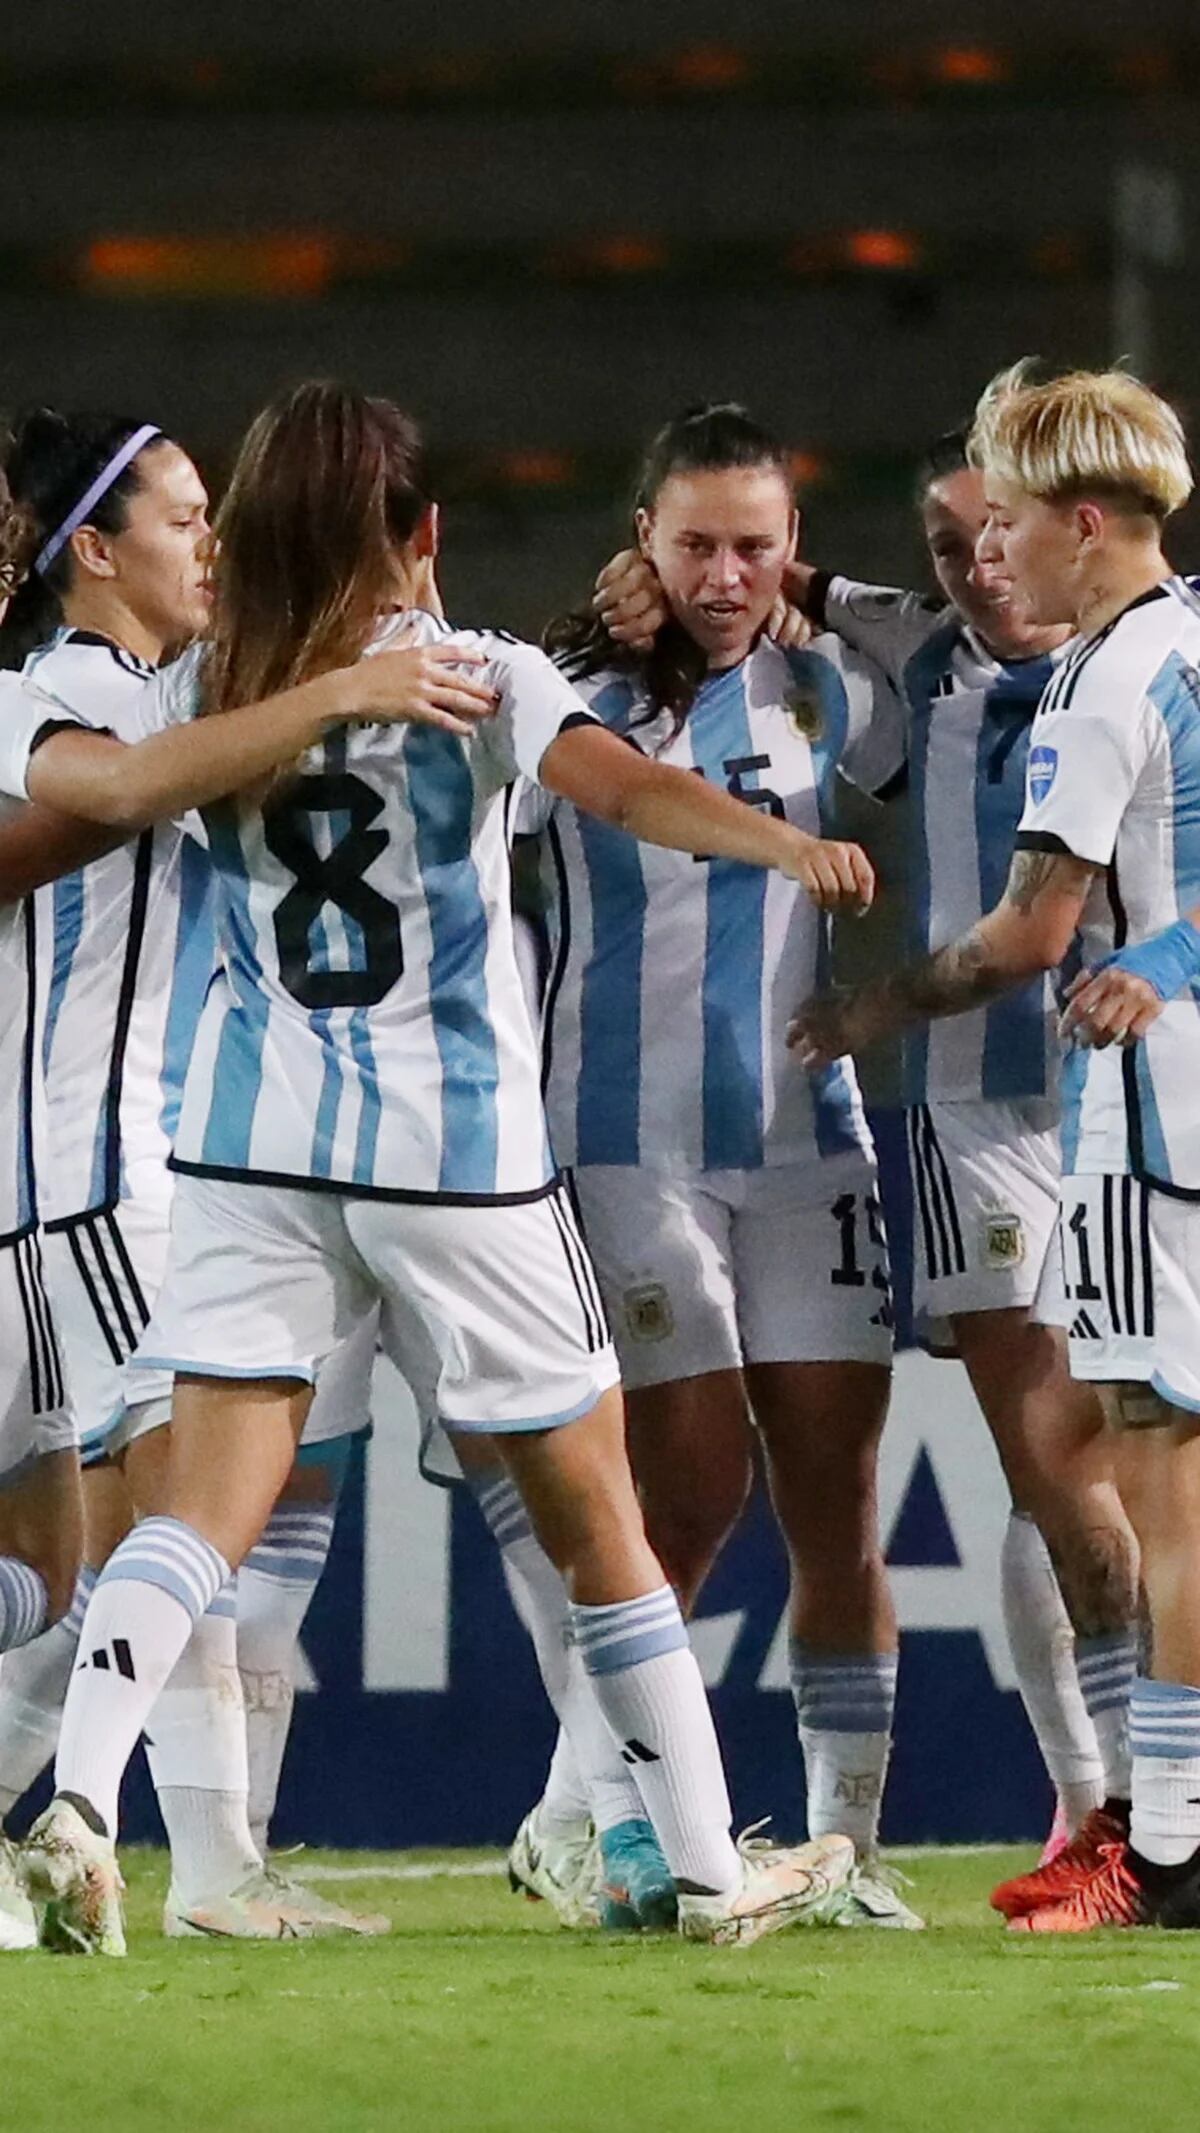 Copa América Femenina 2022: la Selección Argentina goleó a Uruguay, Triplete de Rodríguez y aportes de Banini y Stábile para los de Portanova  en Colombia, Página